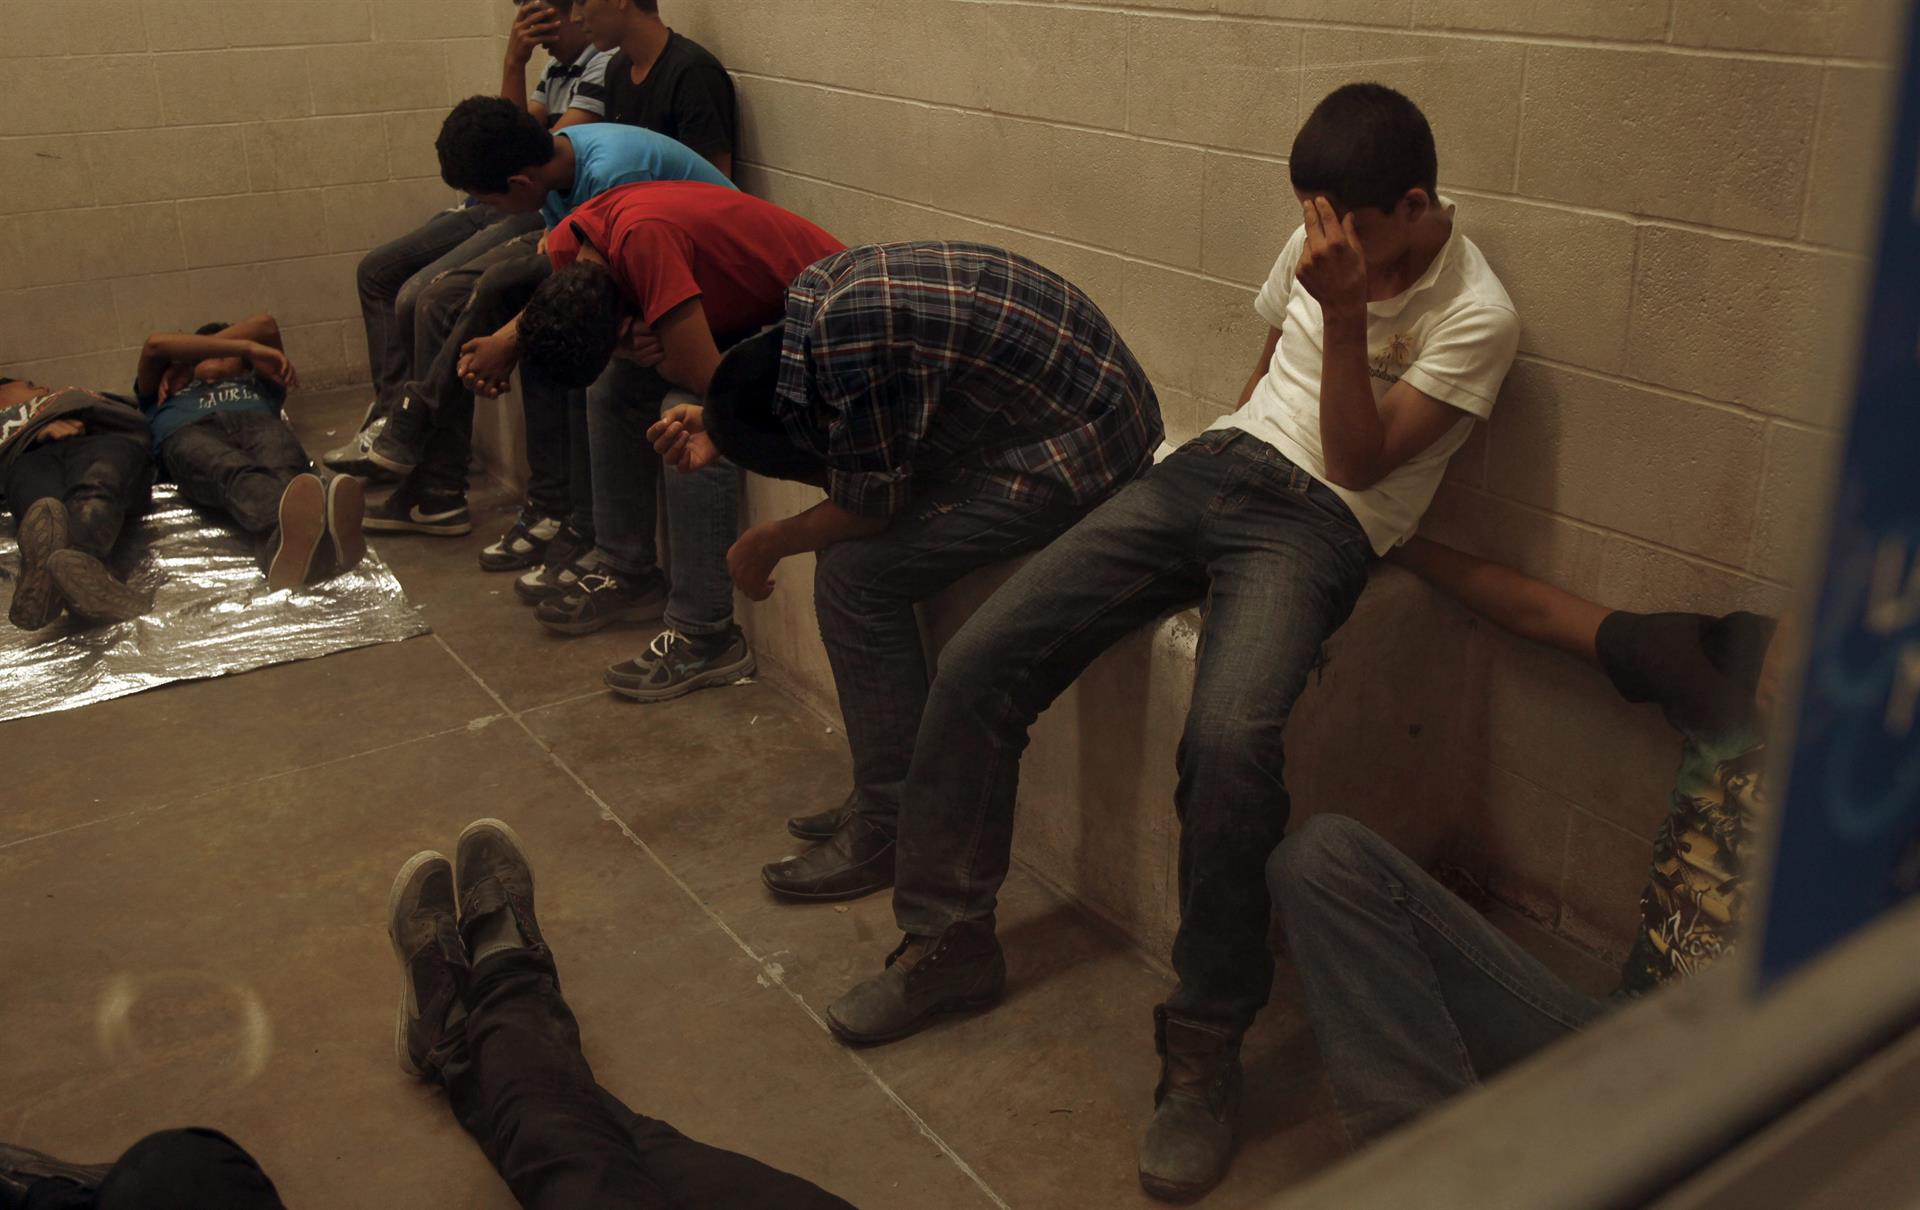 Vista de inmigrantes que han cruzado ilegalmente la frontera, detenidos para ser procesados. Imagen de archivo. EFE/Rick Loomis / POOL
